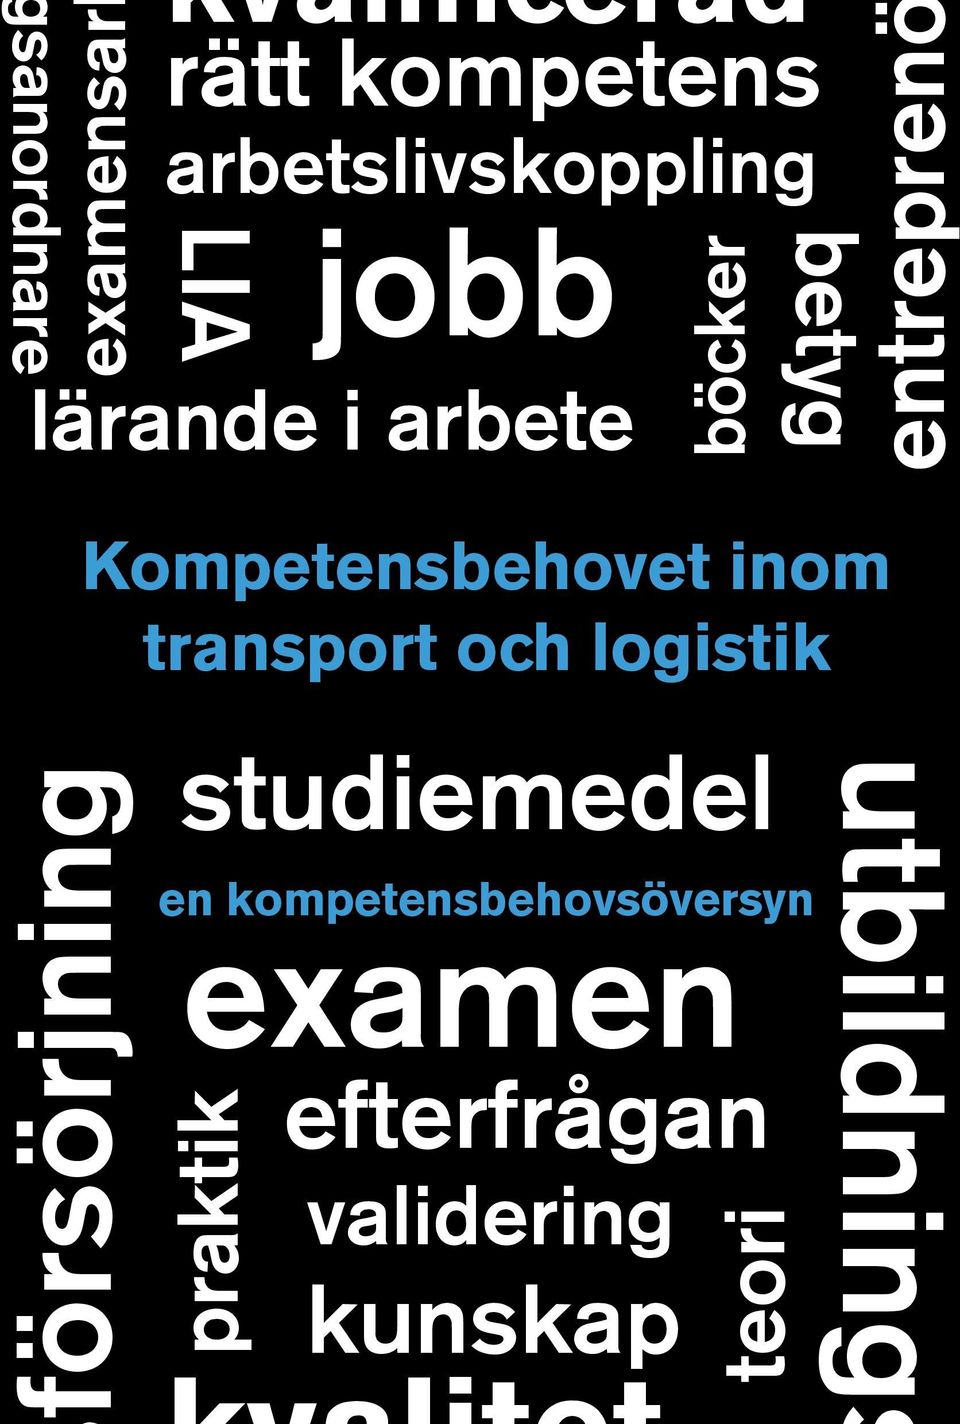 Kompetensbehovet inom transport och logistik försörjning studiemedel